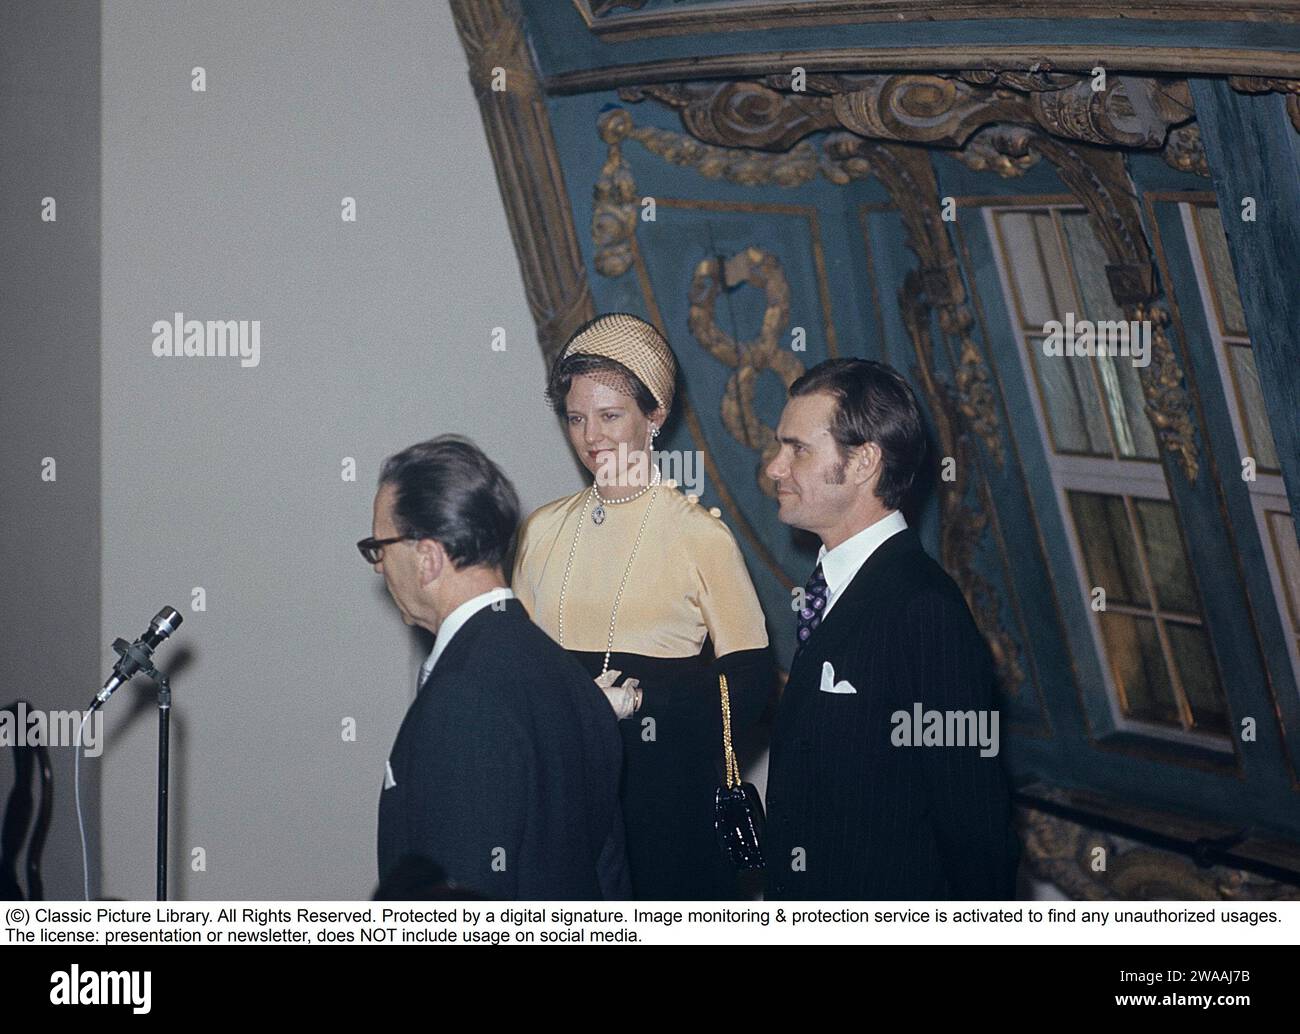 Margrethe II. Von Dänemark. Auf einen Besuch in Schweden 1973 mit Prinz Henrik von Dänemark. Stockfoto